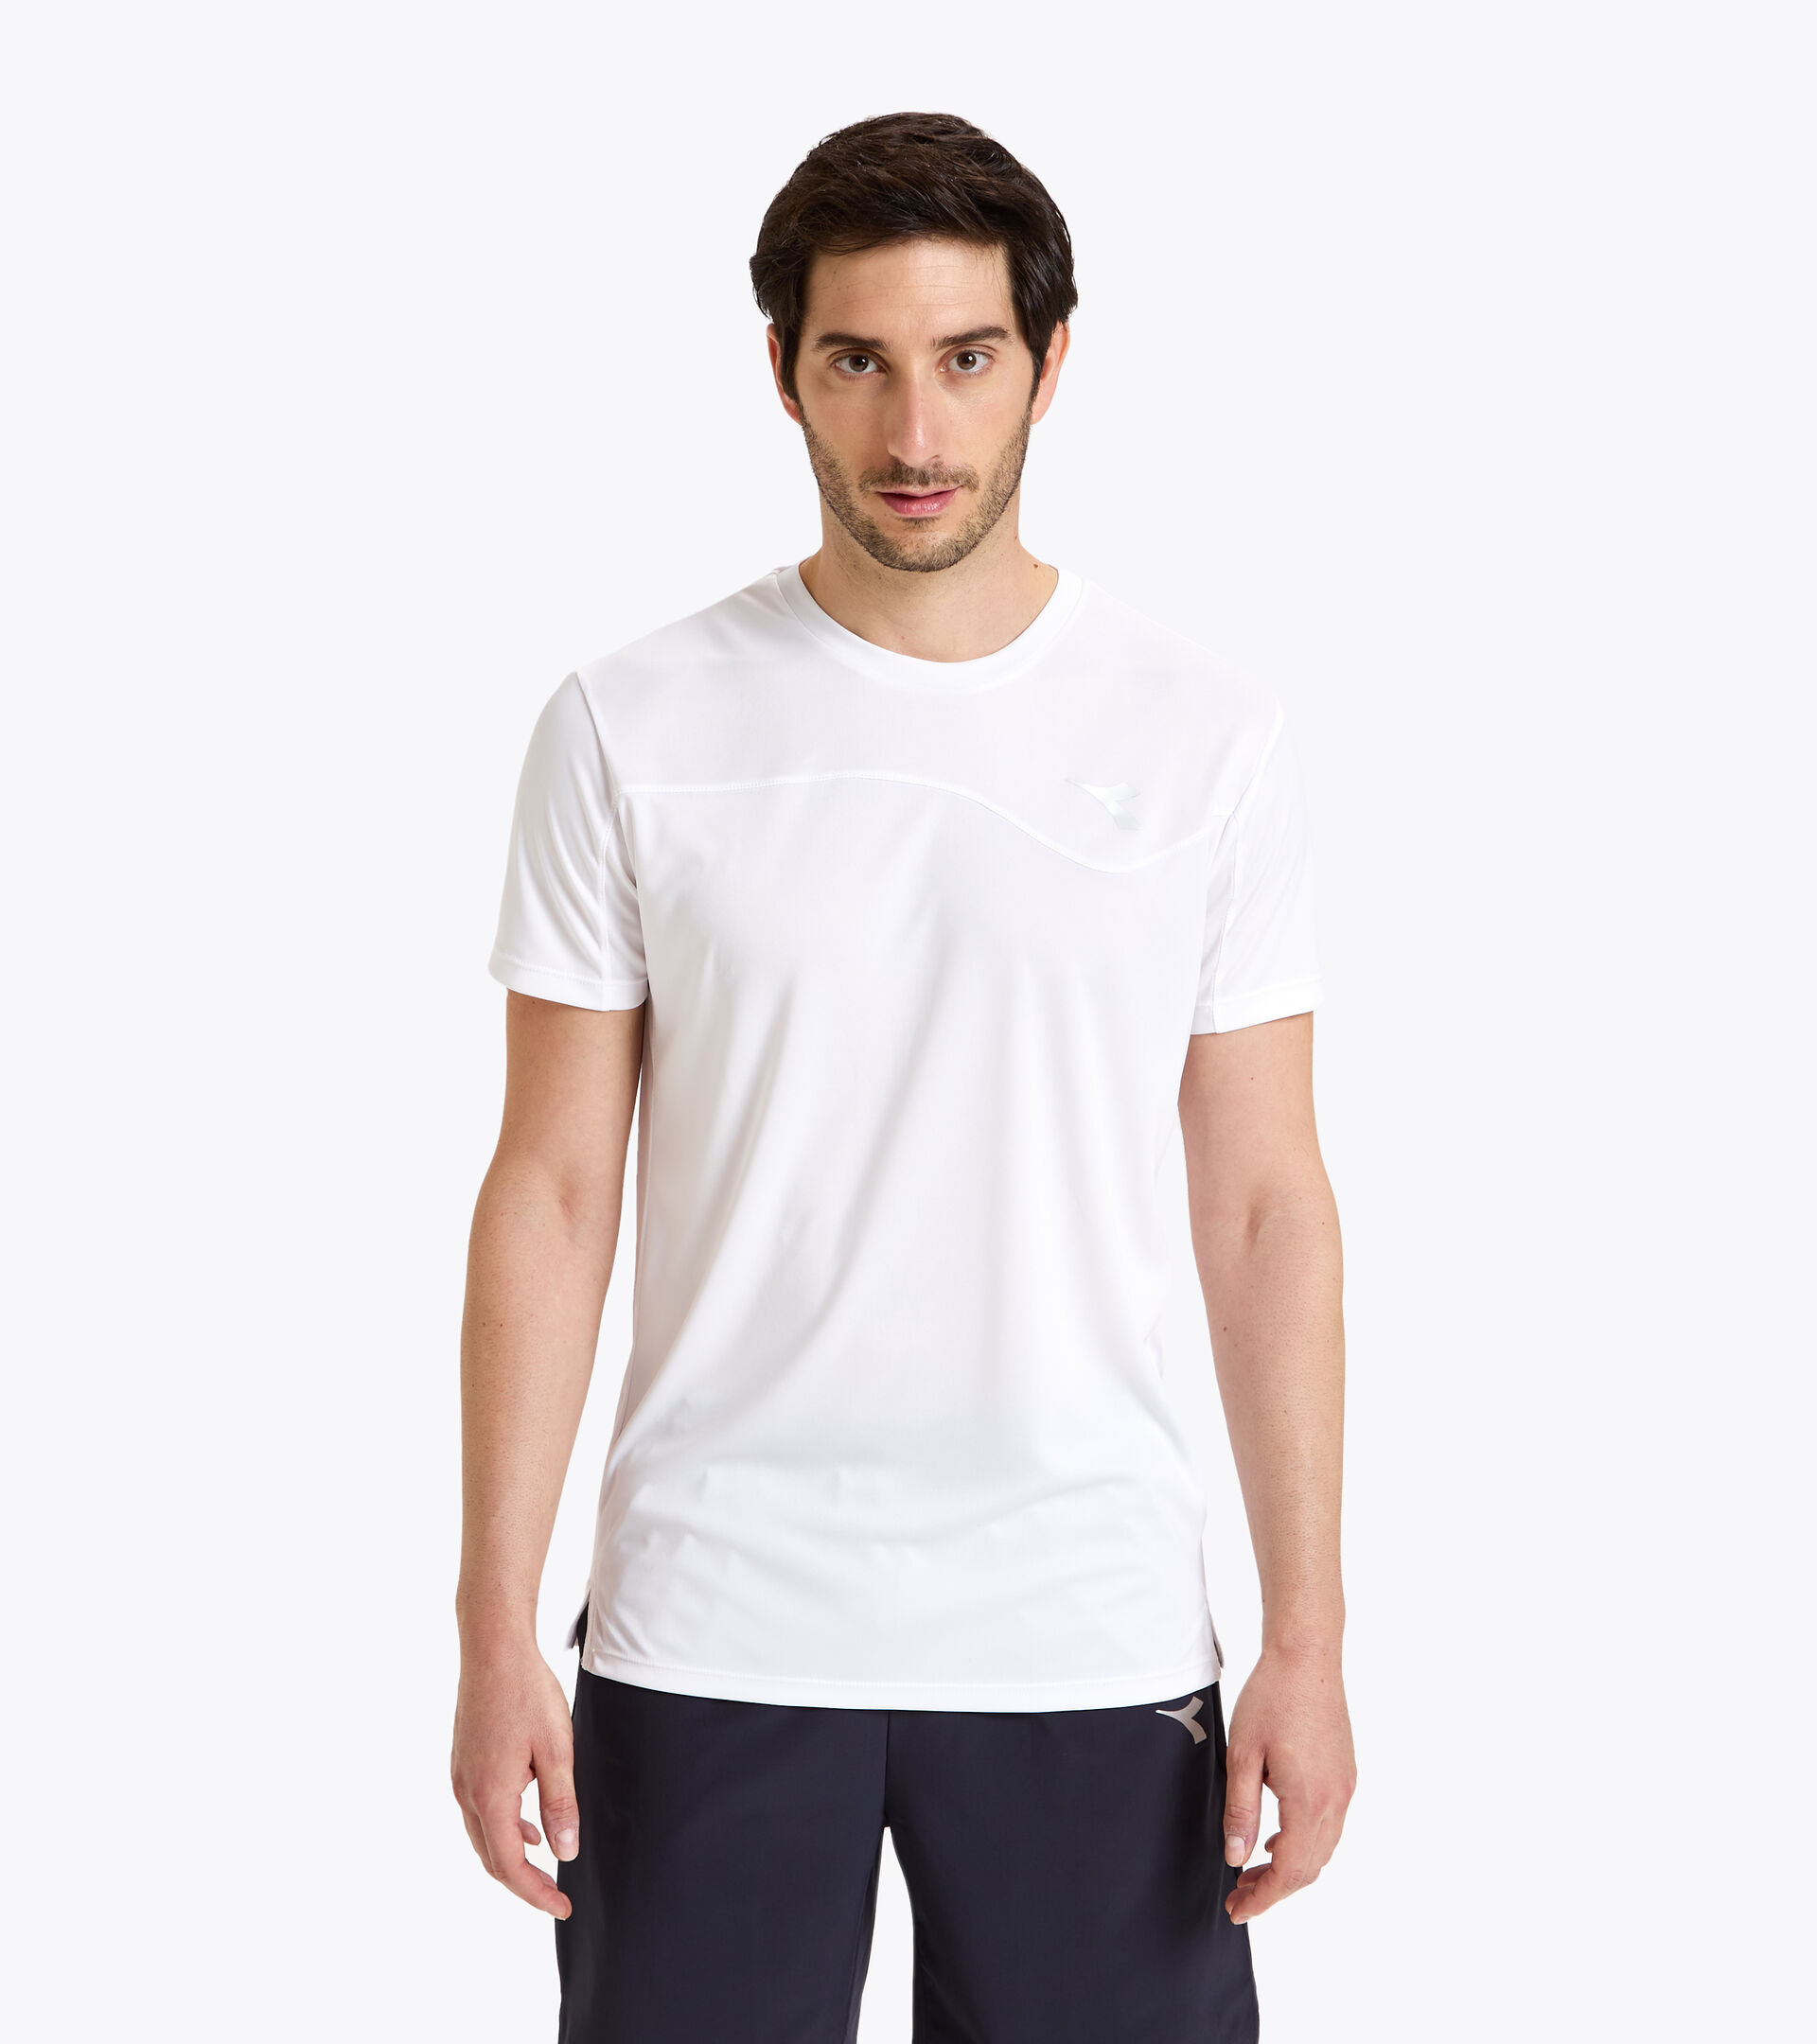 Tennis T-shirt - Men T-SHIRT TEAM OPTICAL WHITE - Diadora